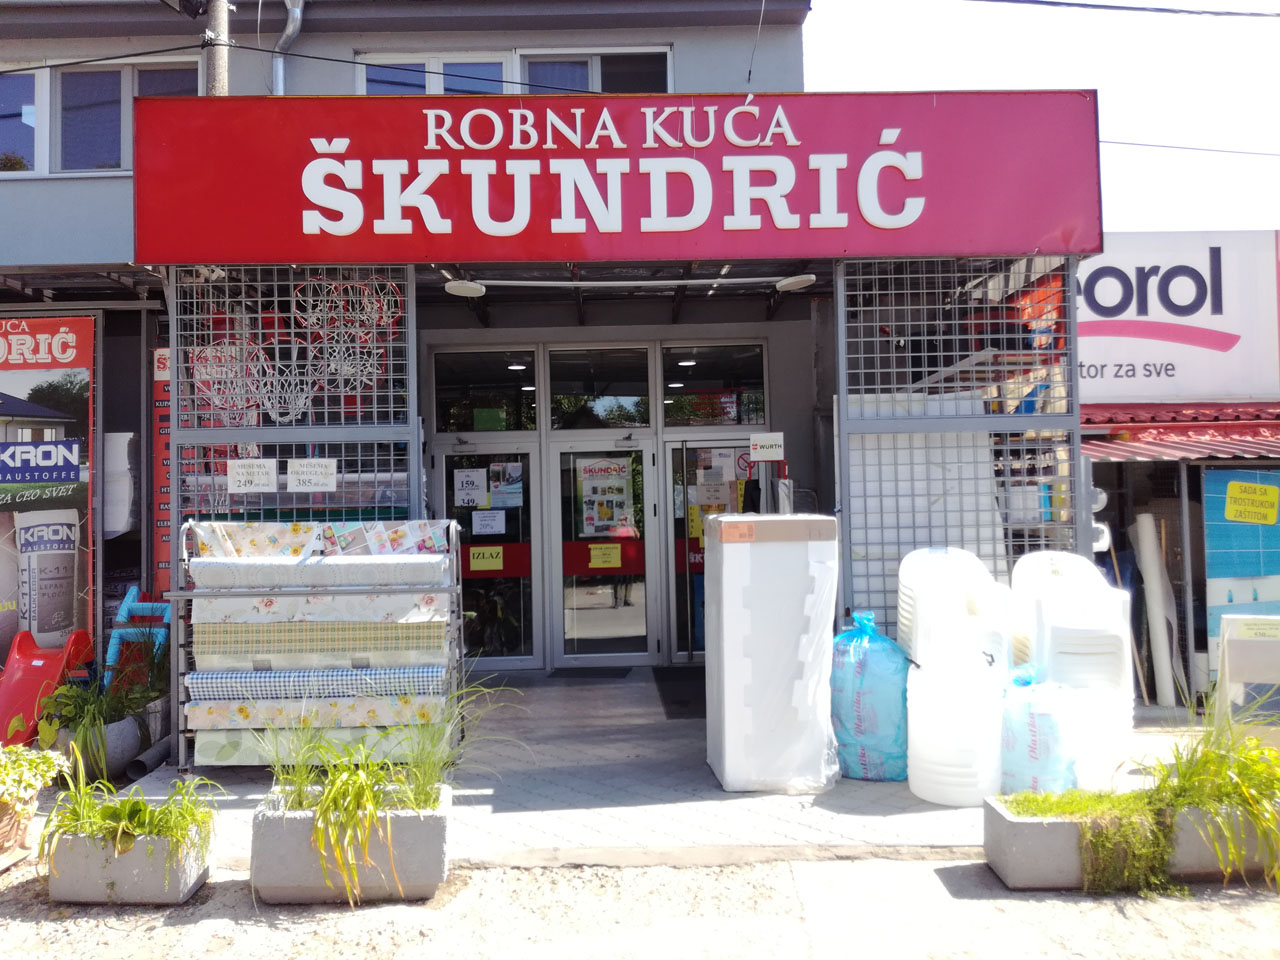 ROBNA KUĆA ŠKUNDRIĆ Kupatila, oprema za kupatila, keramika Beograd - Slika 1